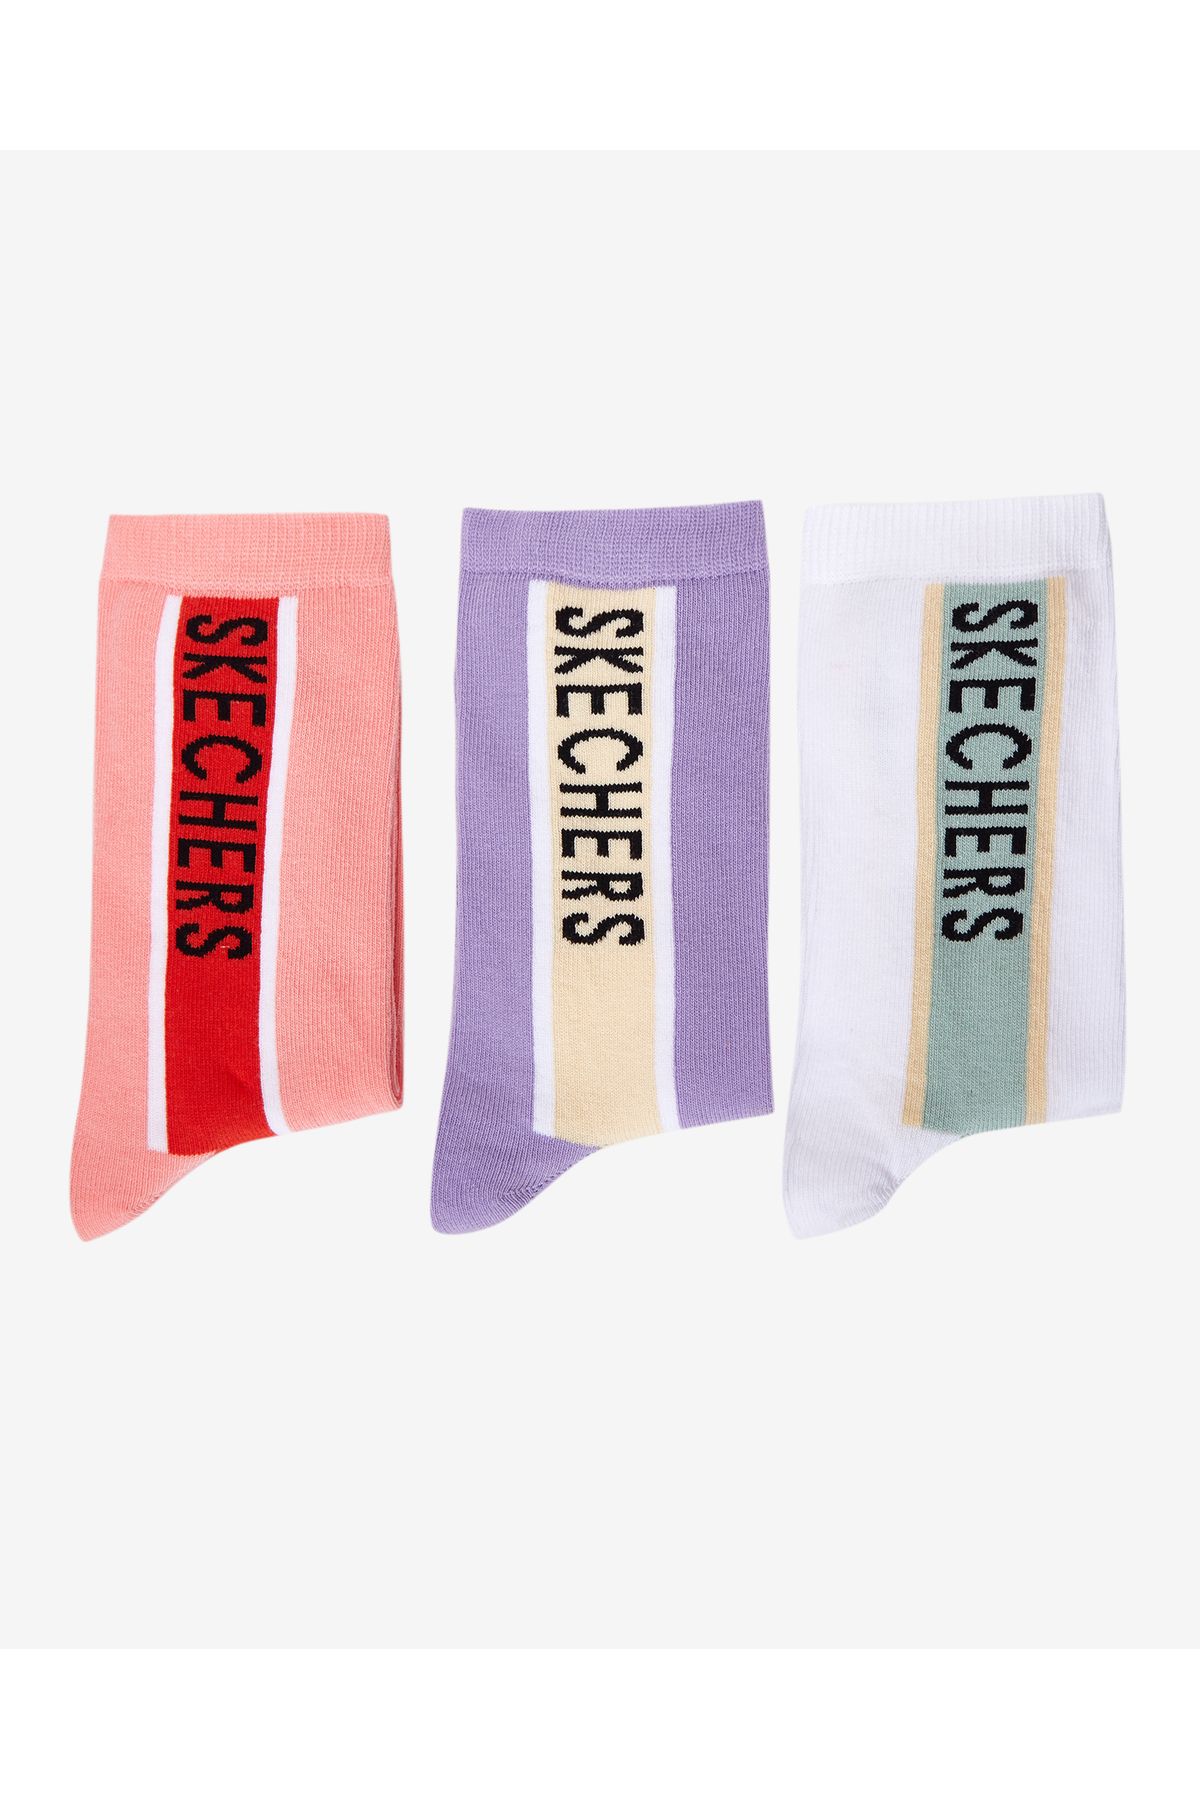 Skechers Sock W 3 Pack Crew Cut Sock Kadın Çok Renkli Çorap S222423-900